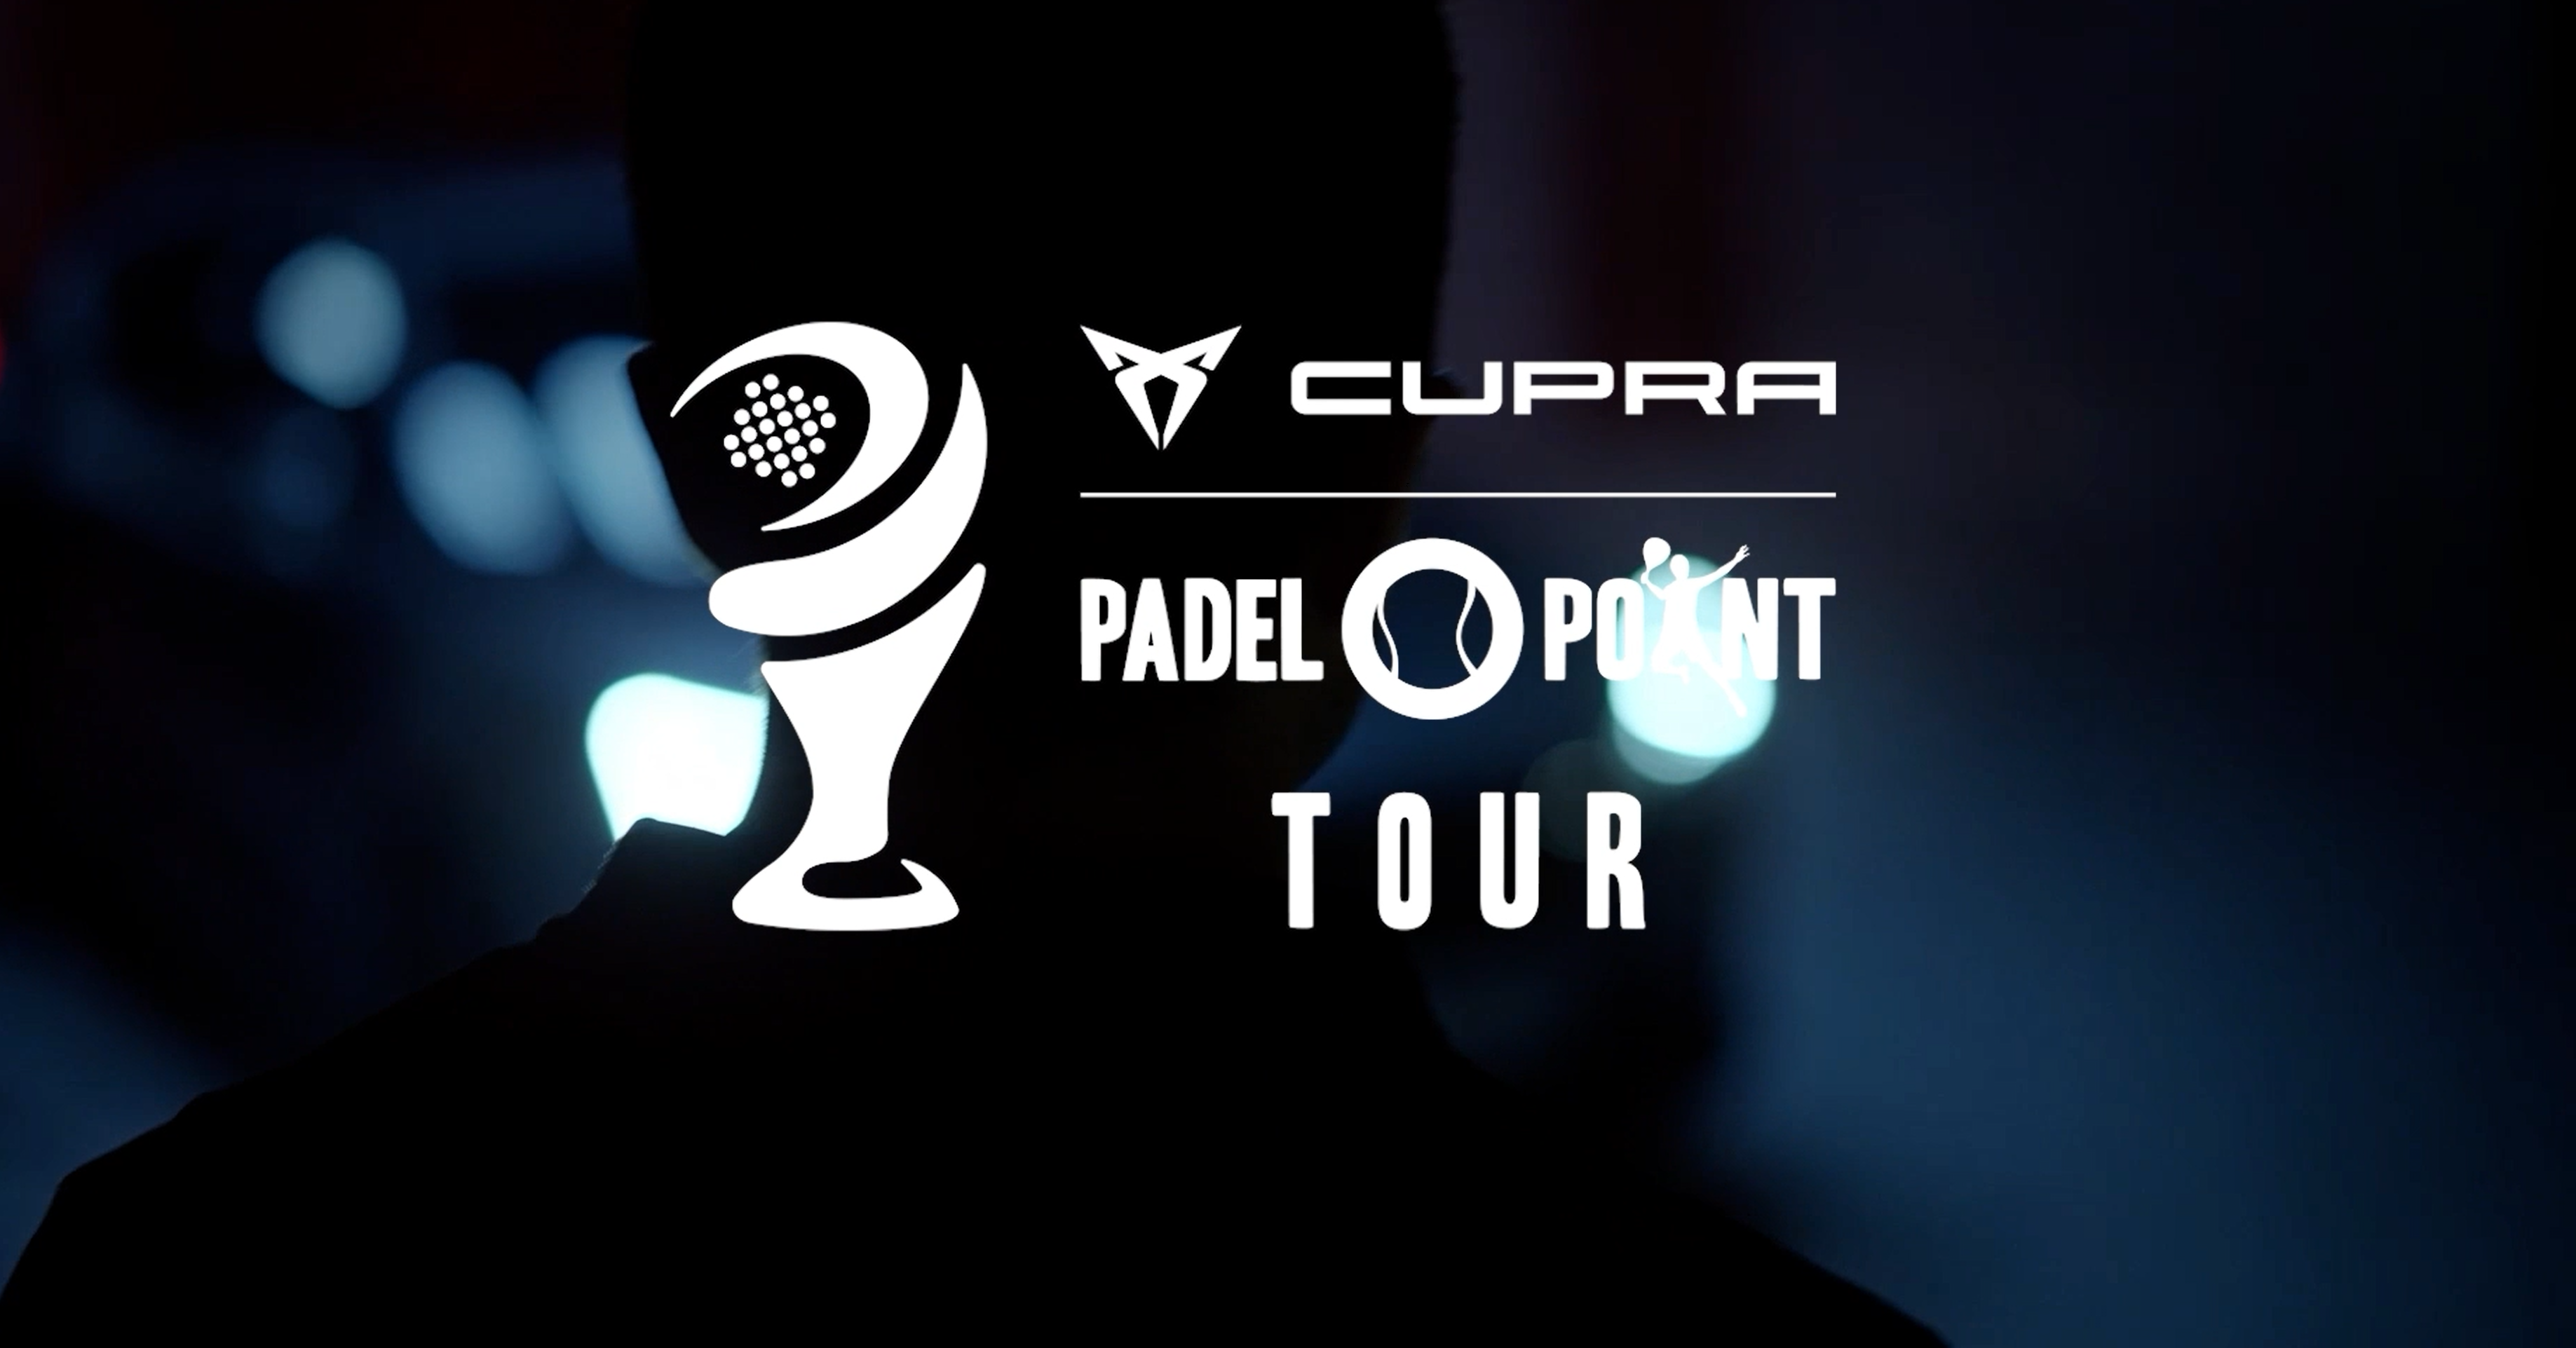 Cupra Padel-Point Tour Rennes – Uma exposição tentadora!